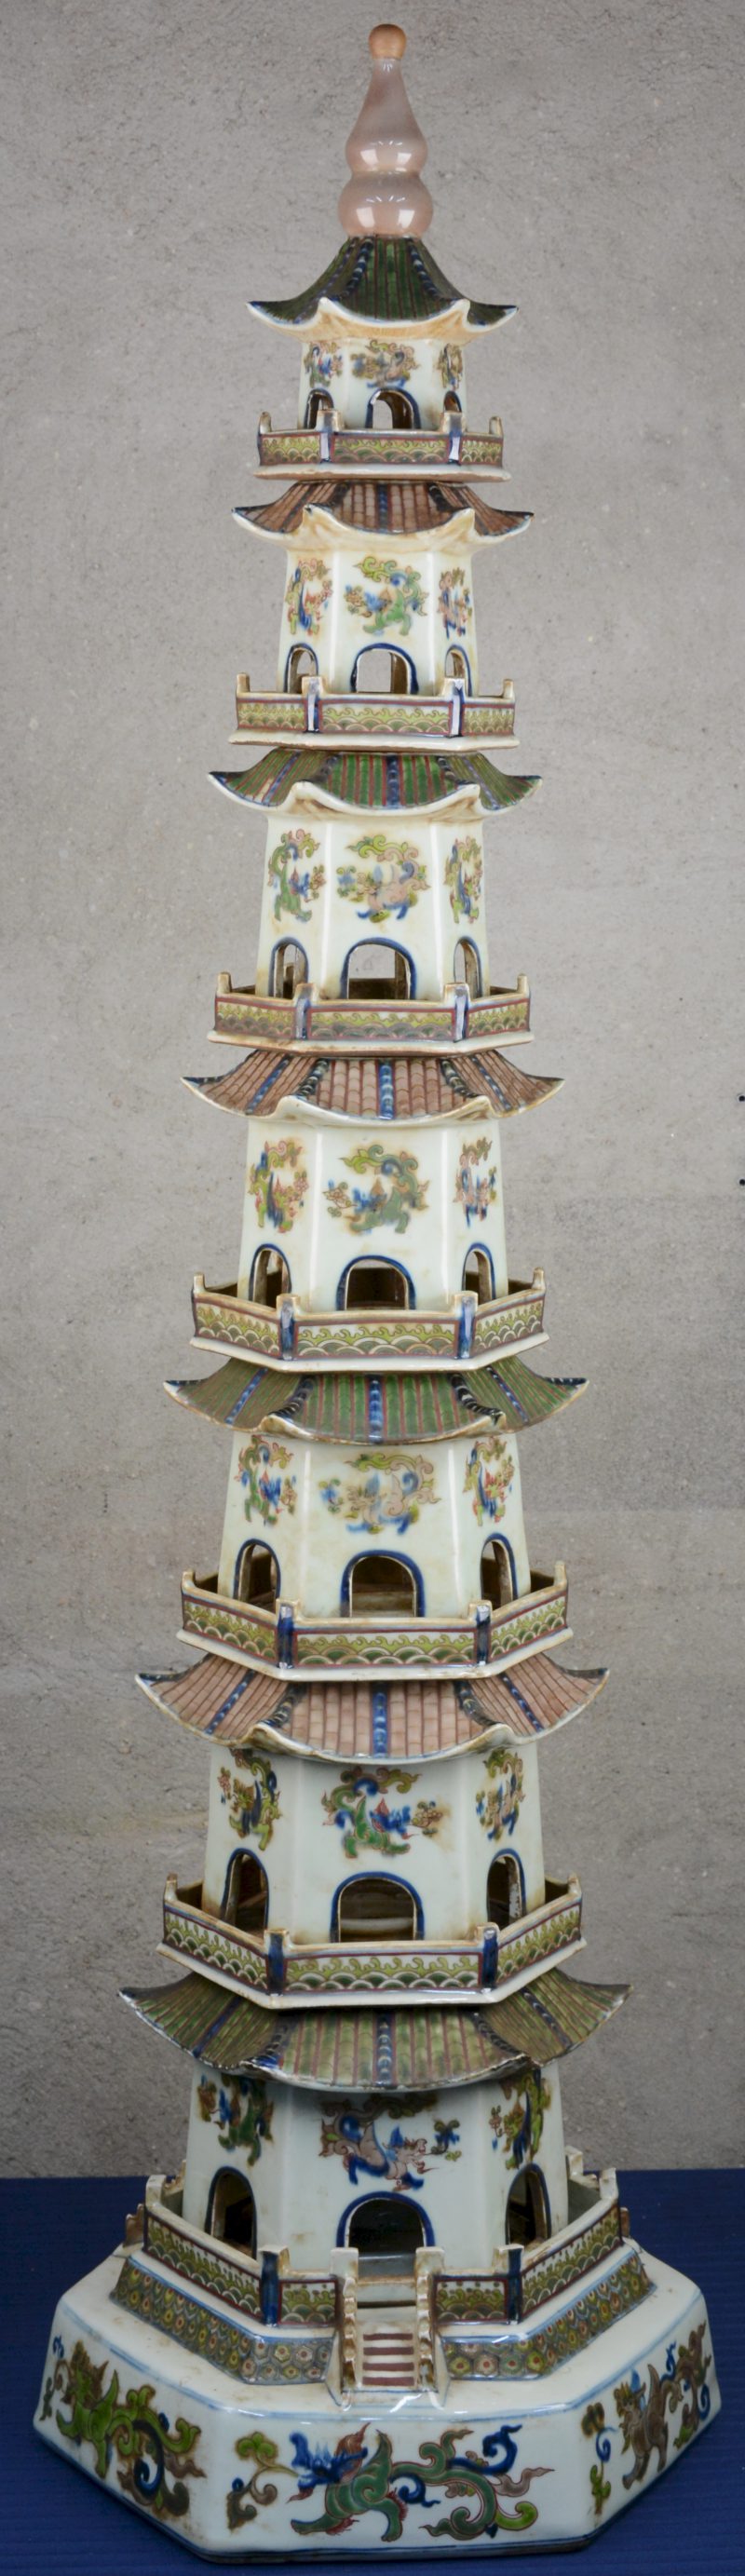 Een uit acht delen opgebouwde Chinese pagode van meerkleurig porselein met een decor van draken.